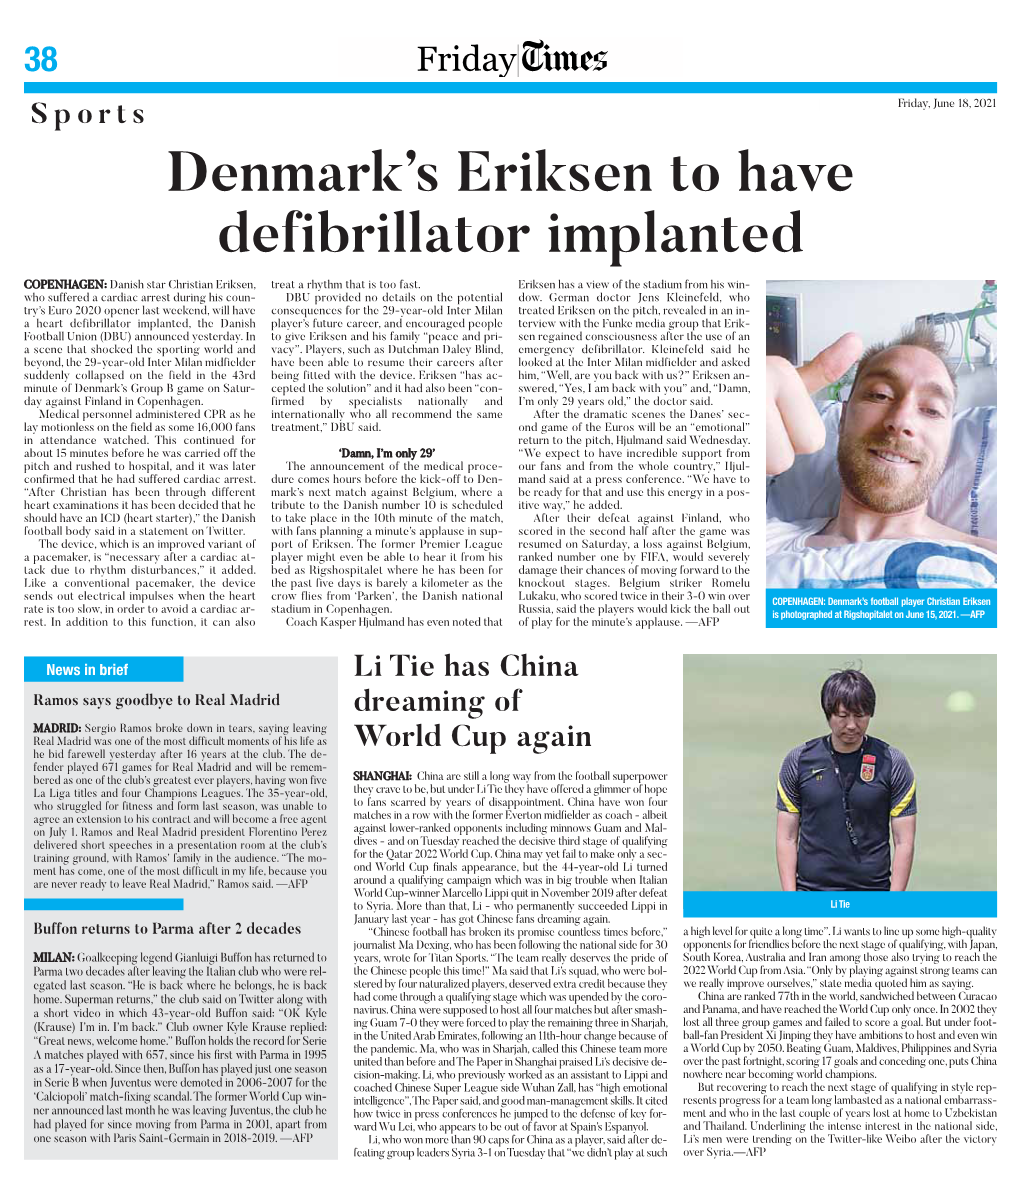 Denmark's Eriksen to Have Defibrillator Implanted